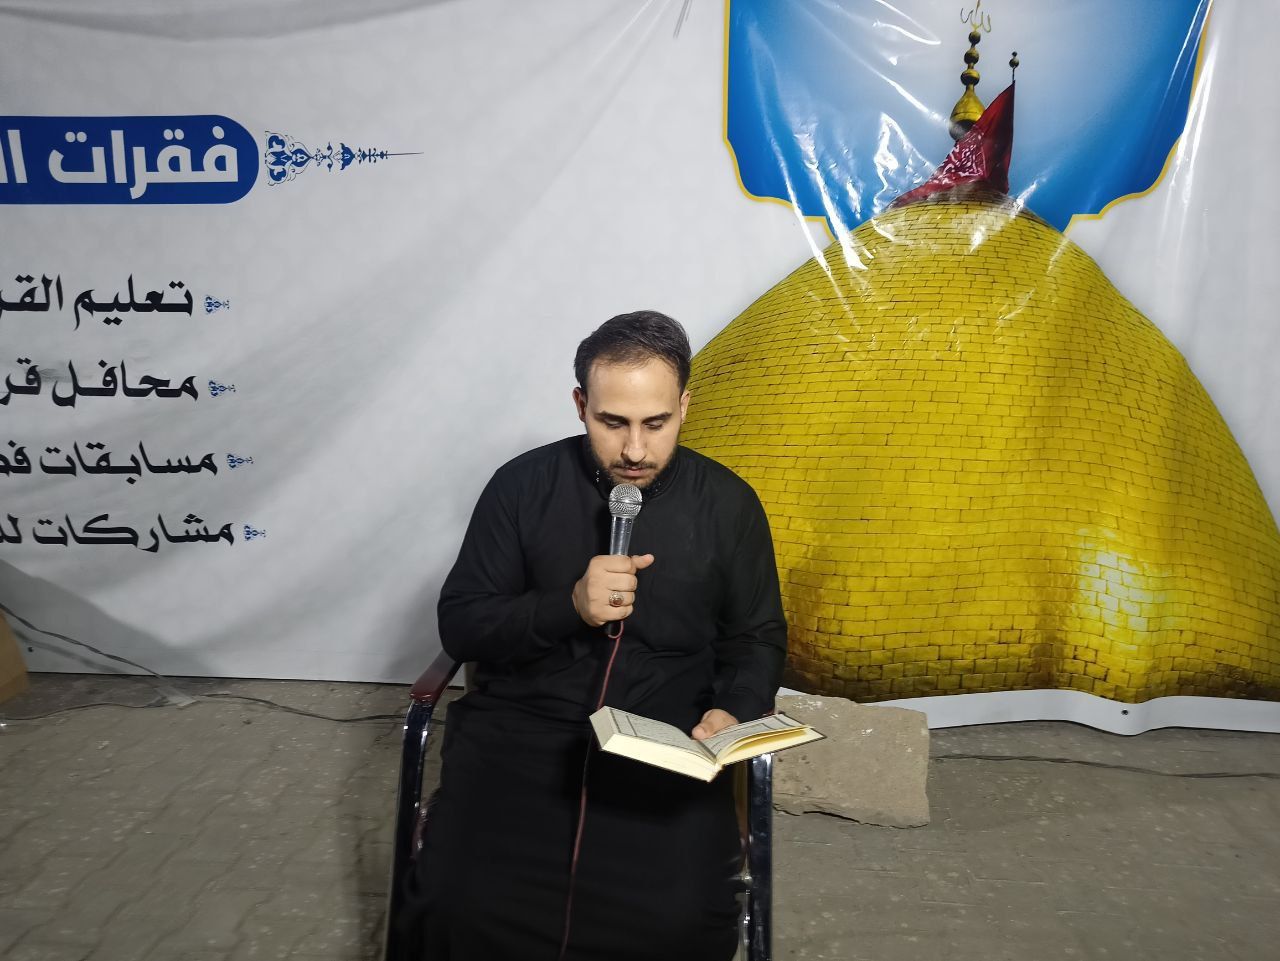 محفل قرآنيّ في بغداد يُقام ضمن مشروع تعليم القراءة الصحيحة